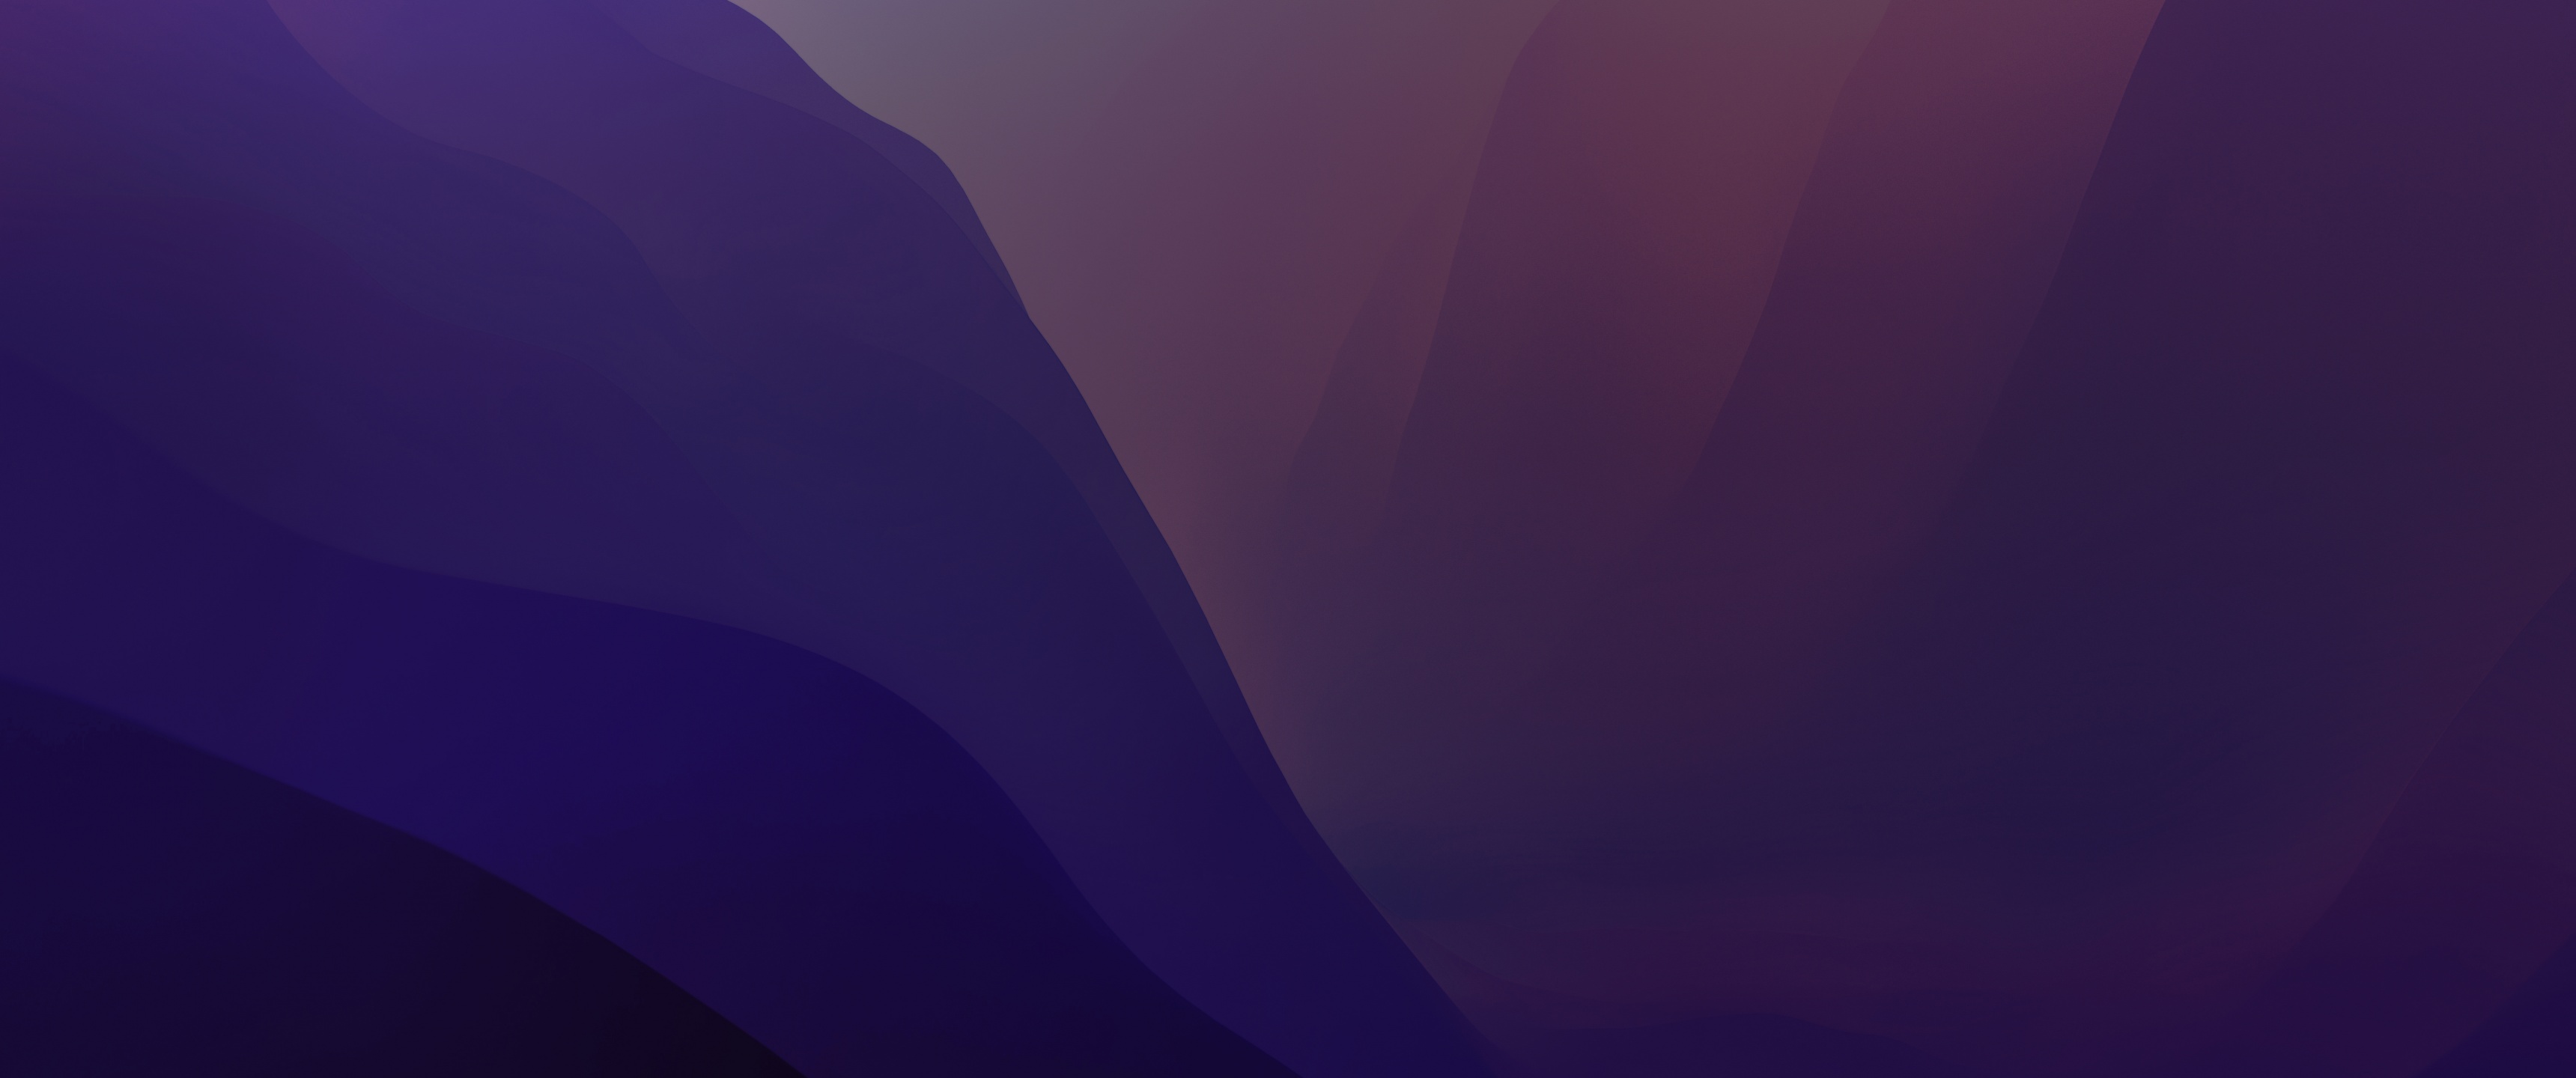 Hình nền macOS Monterey tím là một lựa chọn hoàn hảo cho người dùng Mac. Với sự kết hợp của gradients và màu tím đầy tinh tế, hình nền này sẽ mang lại cho bạn một cái nhìn hoàn toàn mới và độc đáo cho máy tính của bạn.